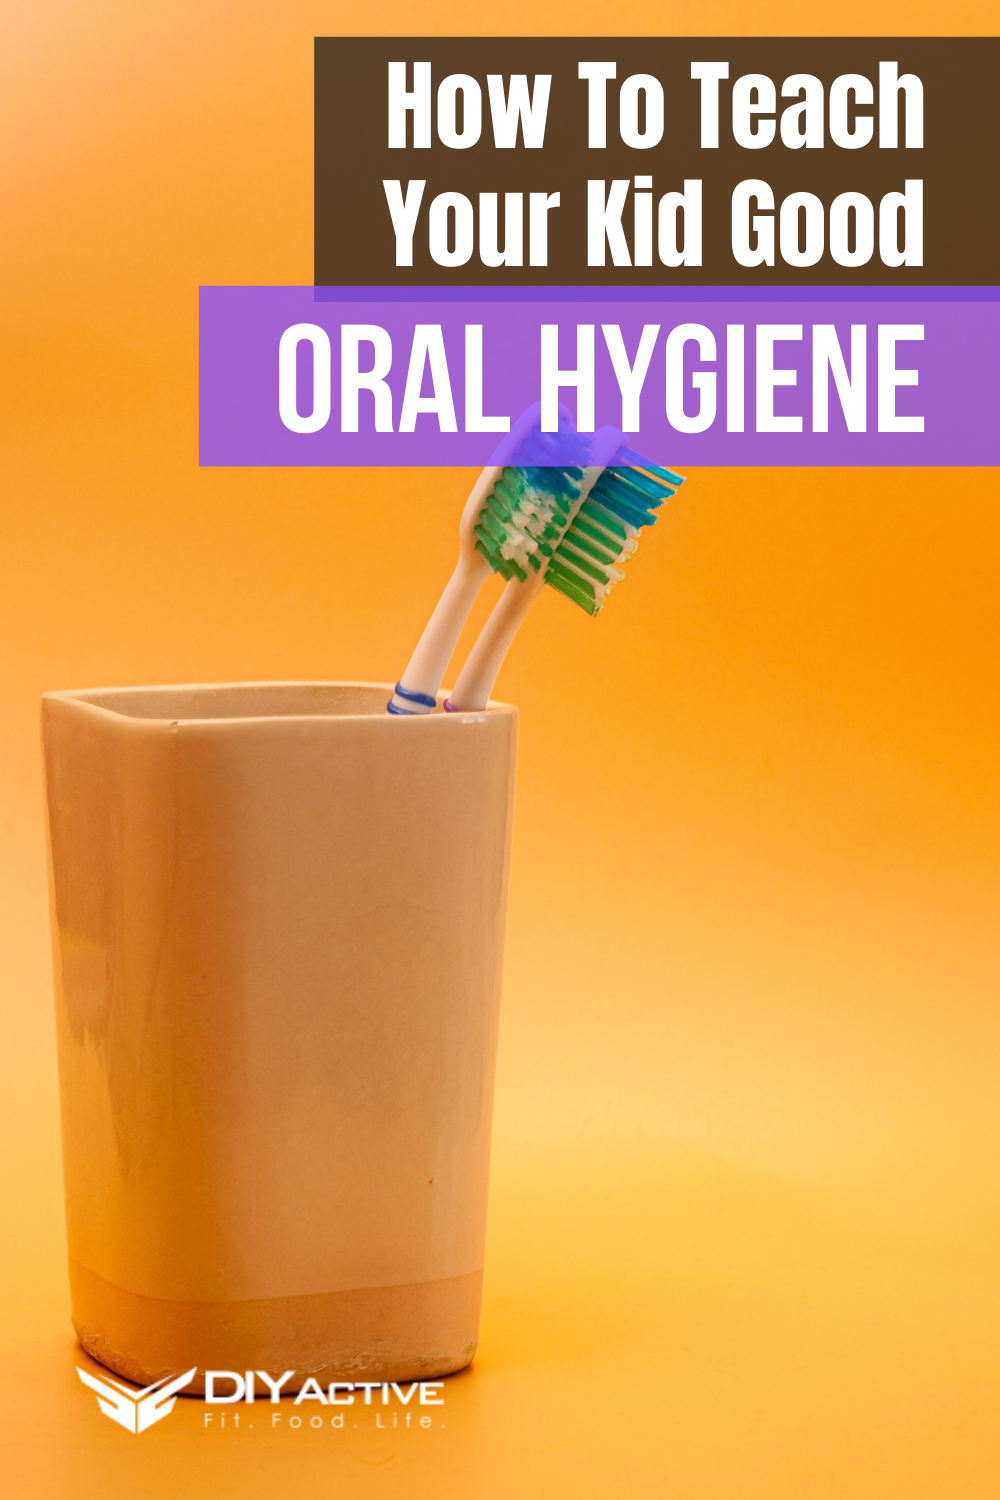 How To Teach Your Kid Good Oral Hygiene